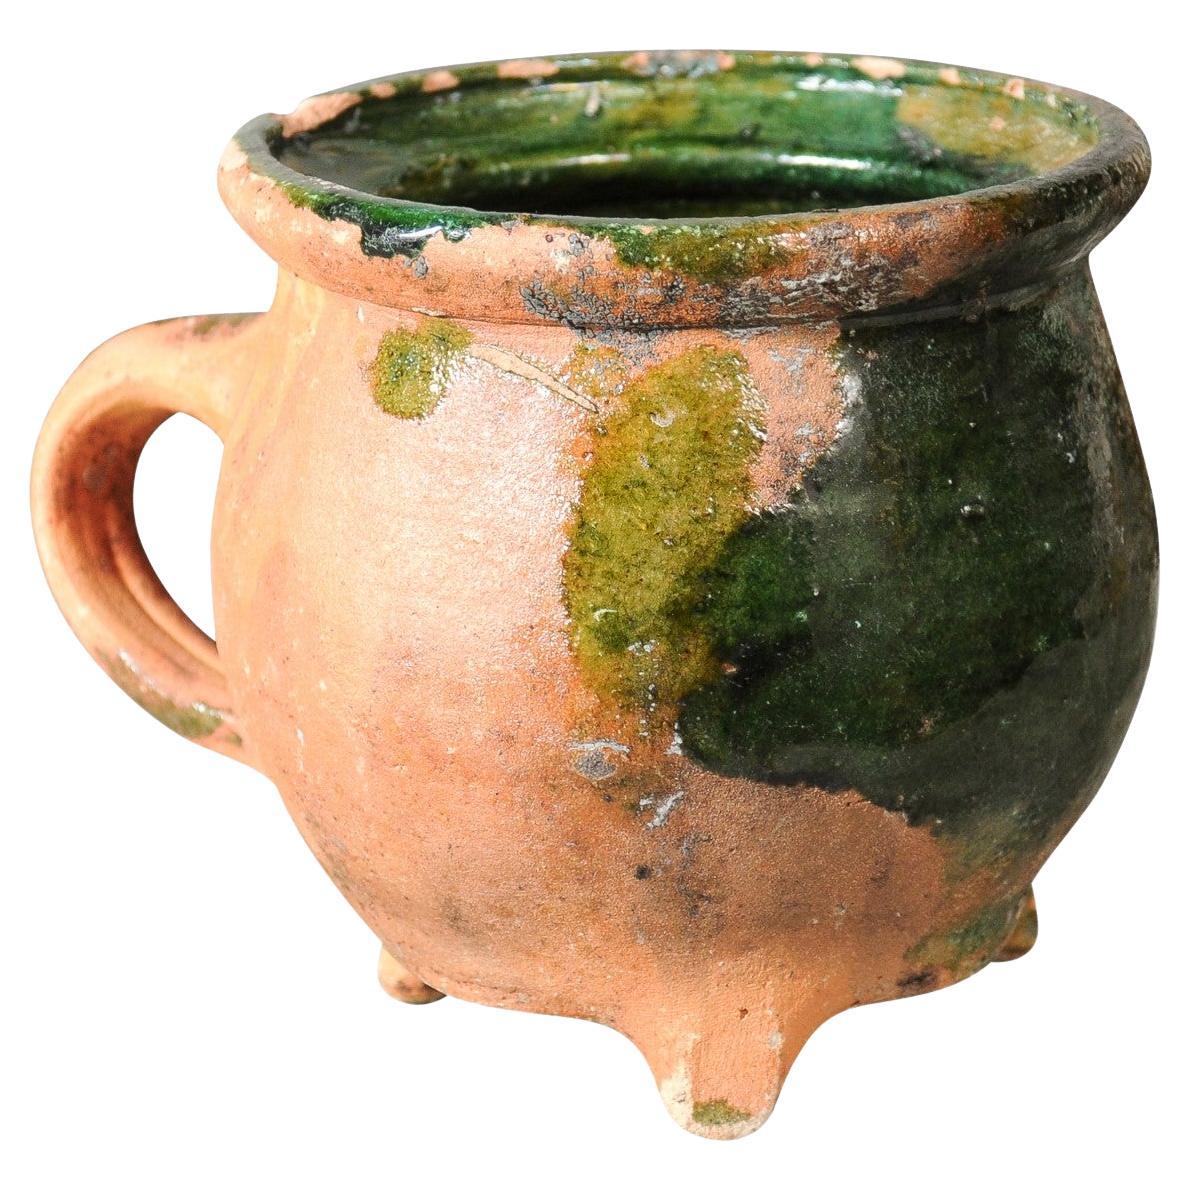 Grün glasierte Keramik im französischen Provinzstil des 19. Jahrhunderts mit Dreibein-Sockel und Griff